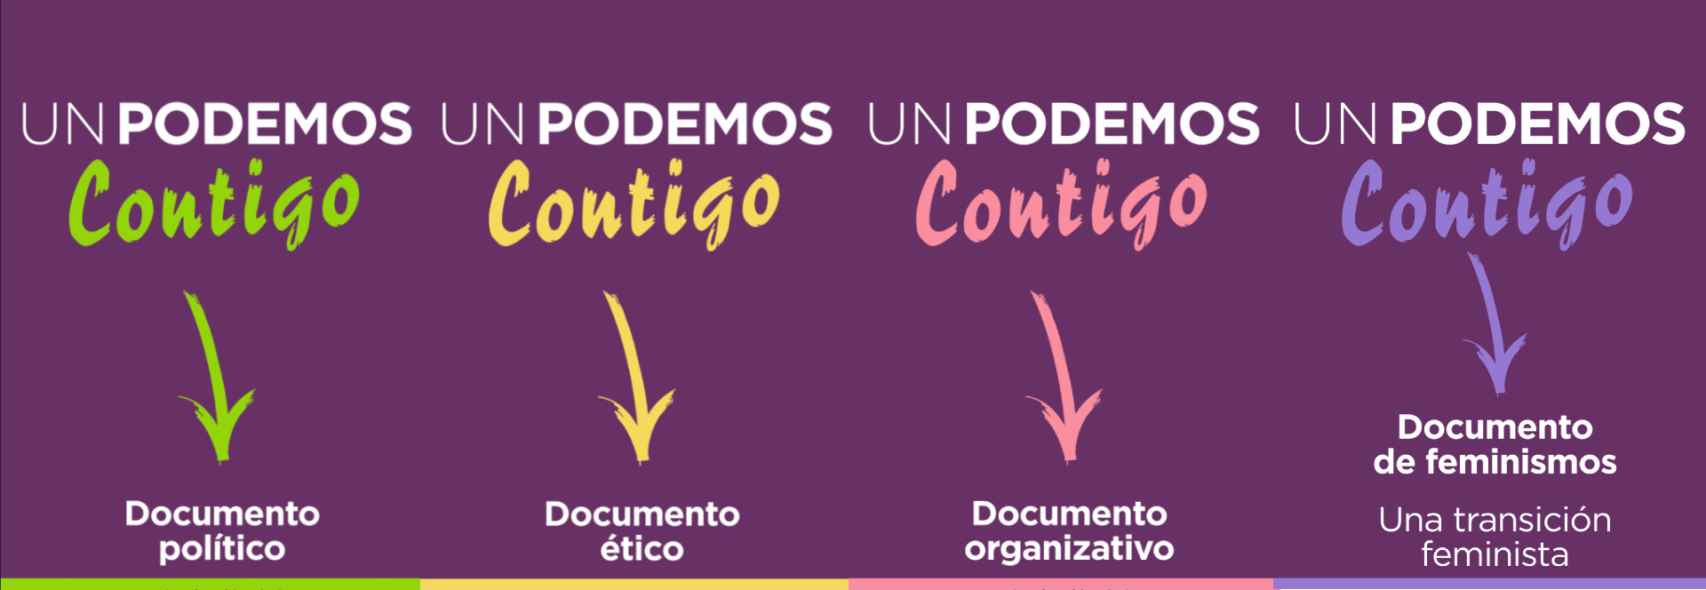 Los cuatro documentos con los que Pablo Iglesias se presenta a al III Asamblea Ciudadana de Podemos.